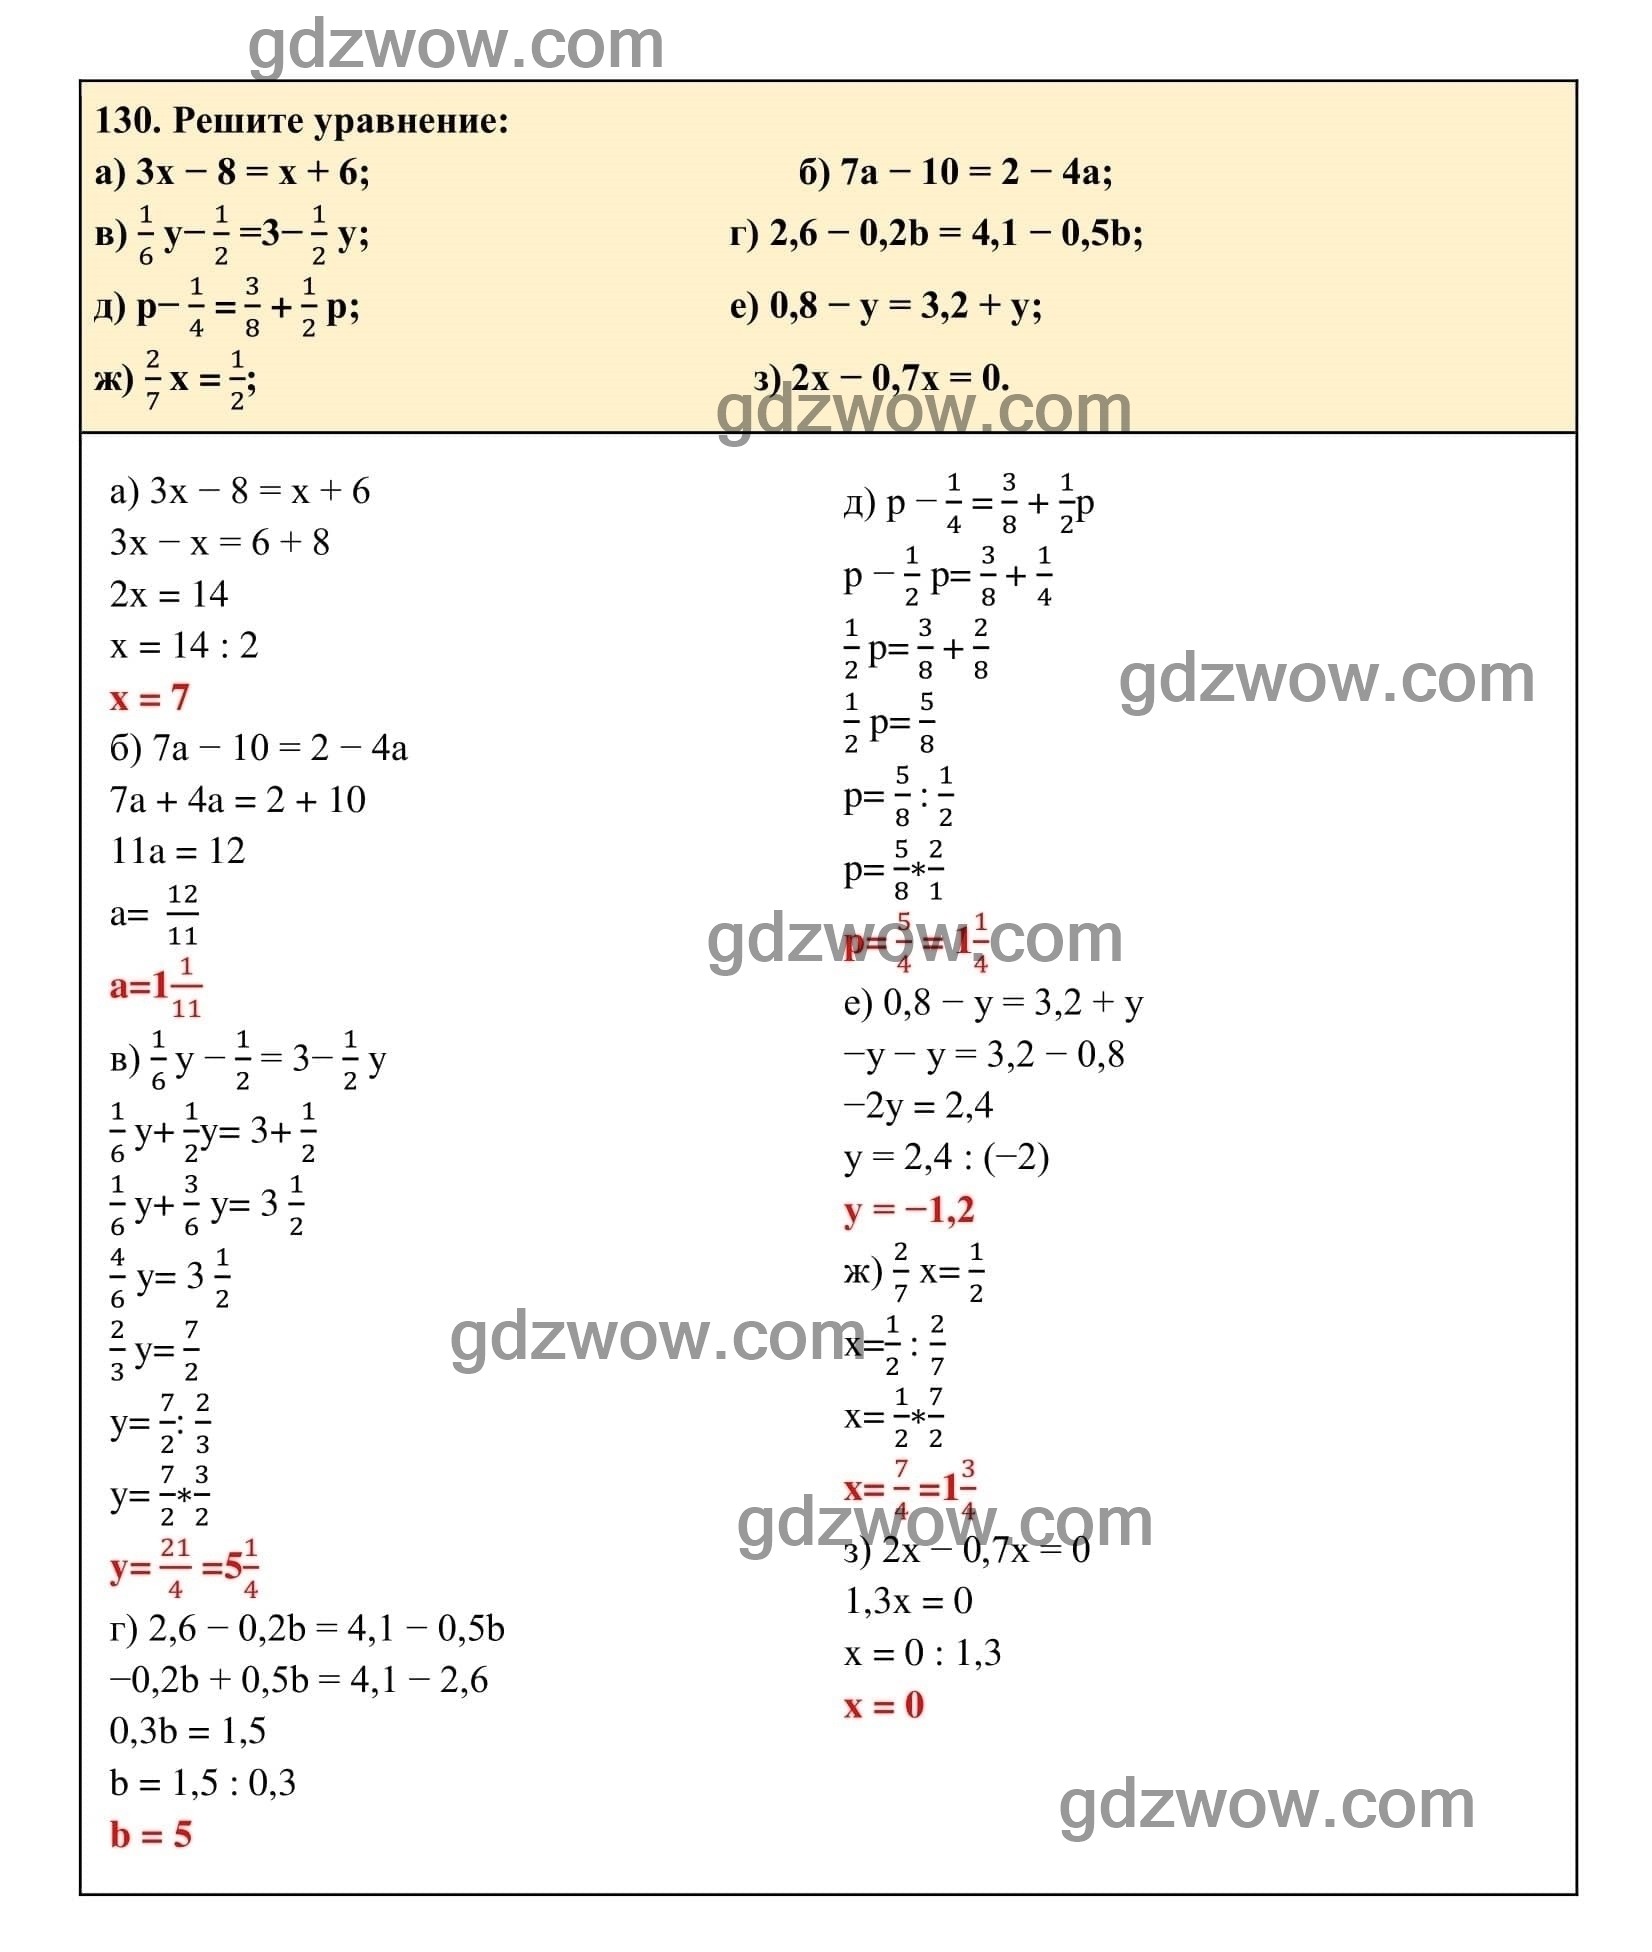 Упражнение 130 - ГДЗ по Алгебре 7 класс Учебник Макарычев (решебник) - GDZwow